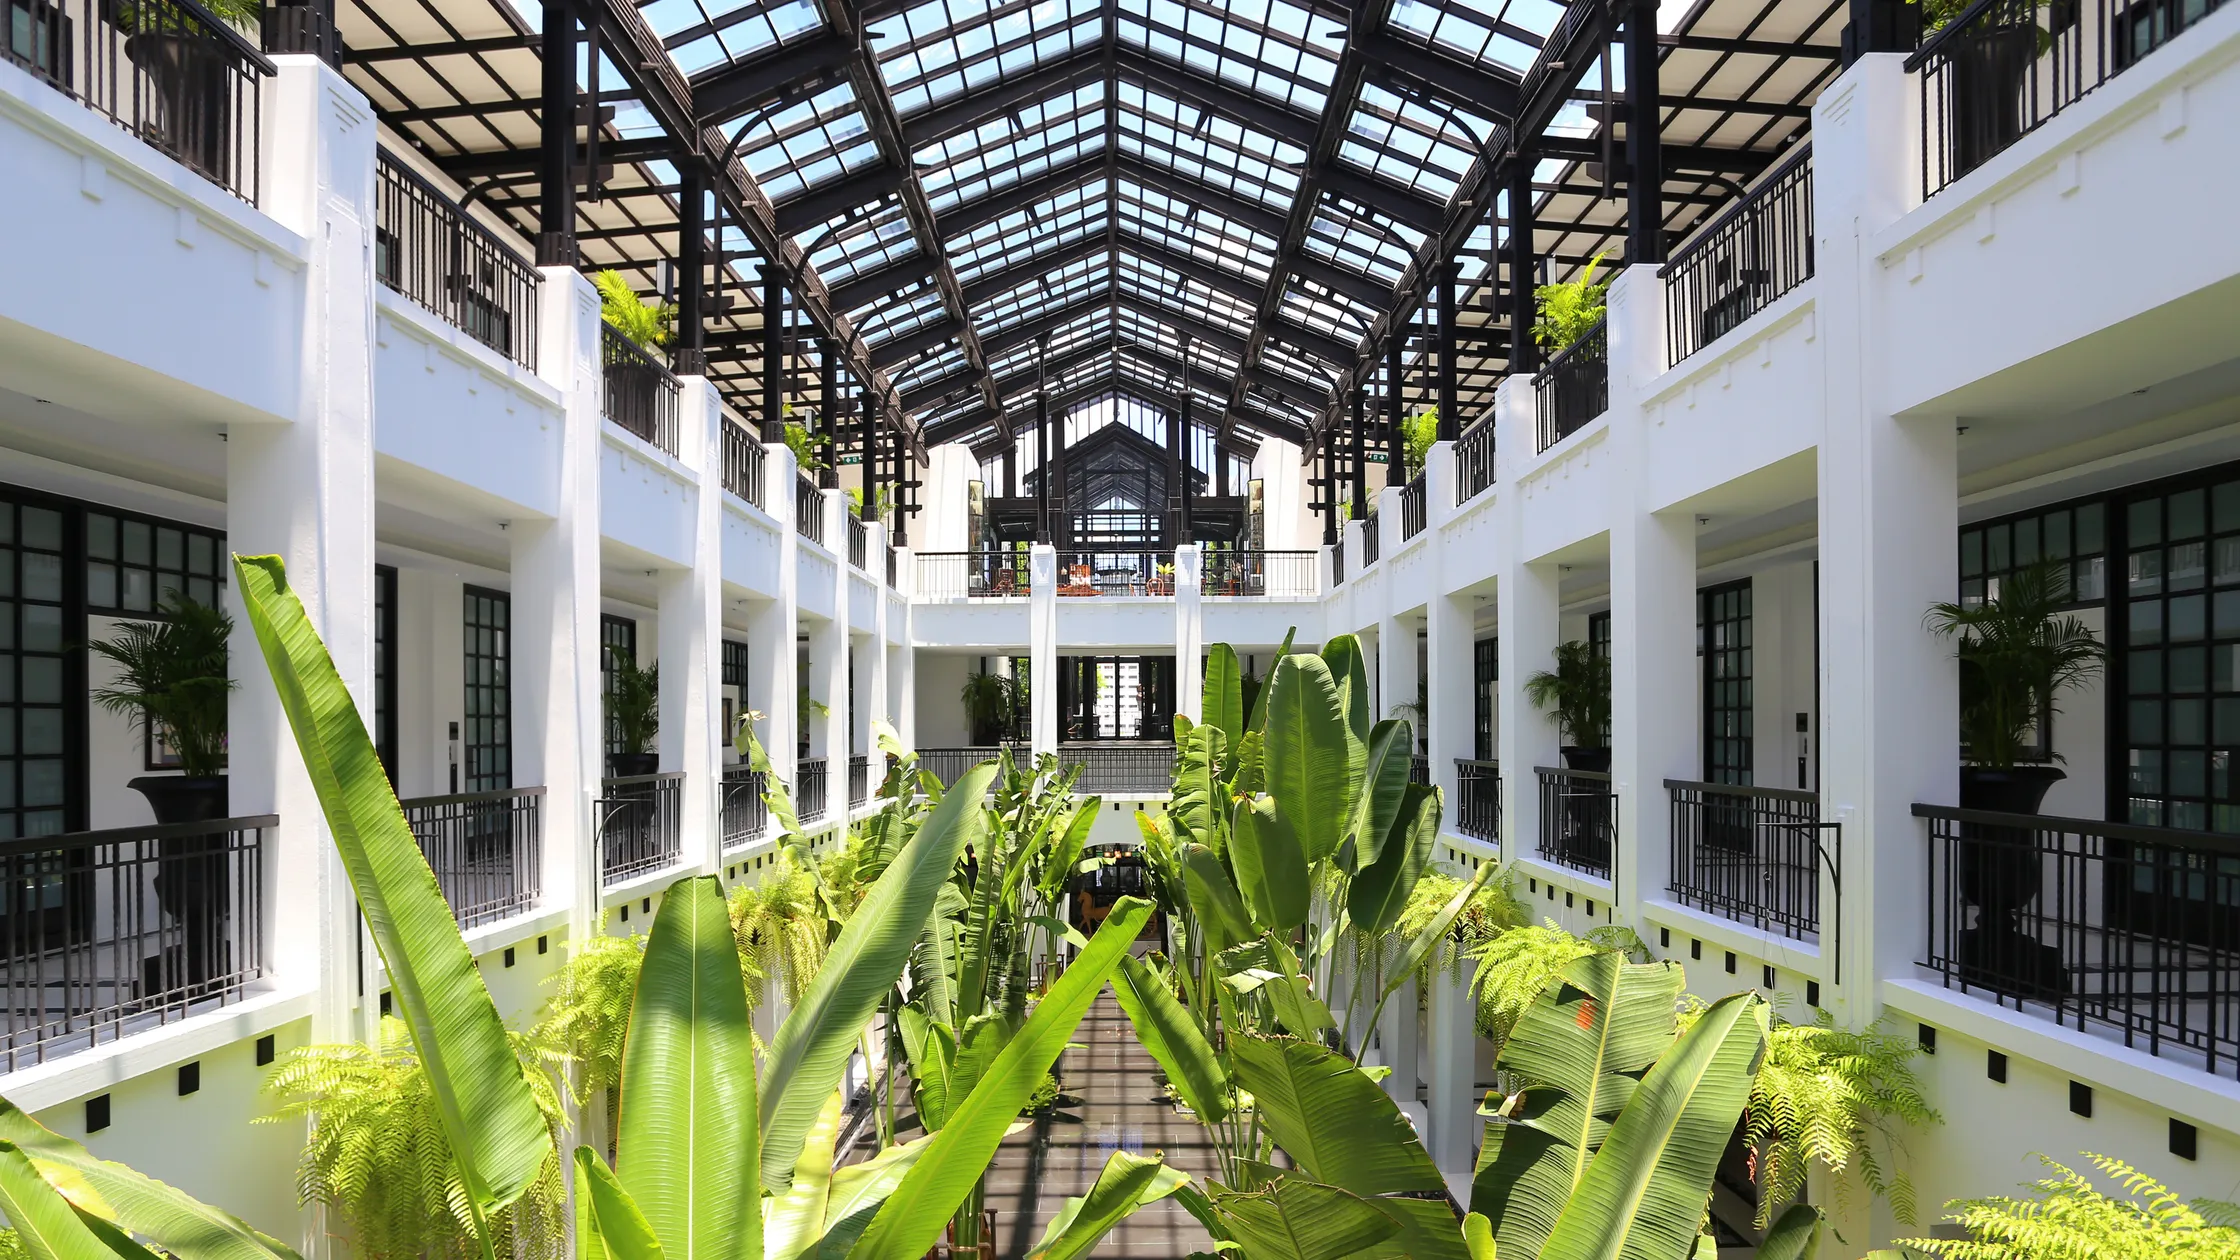 The Siam Hotel Atrium